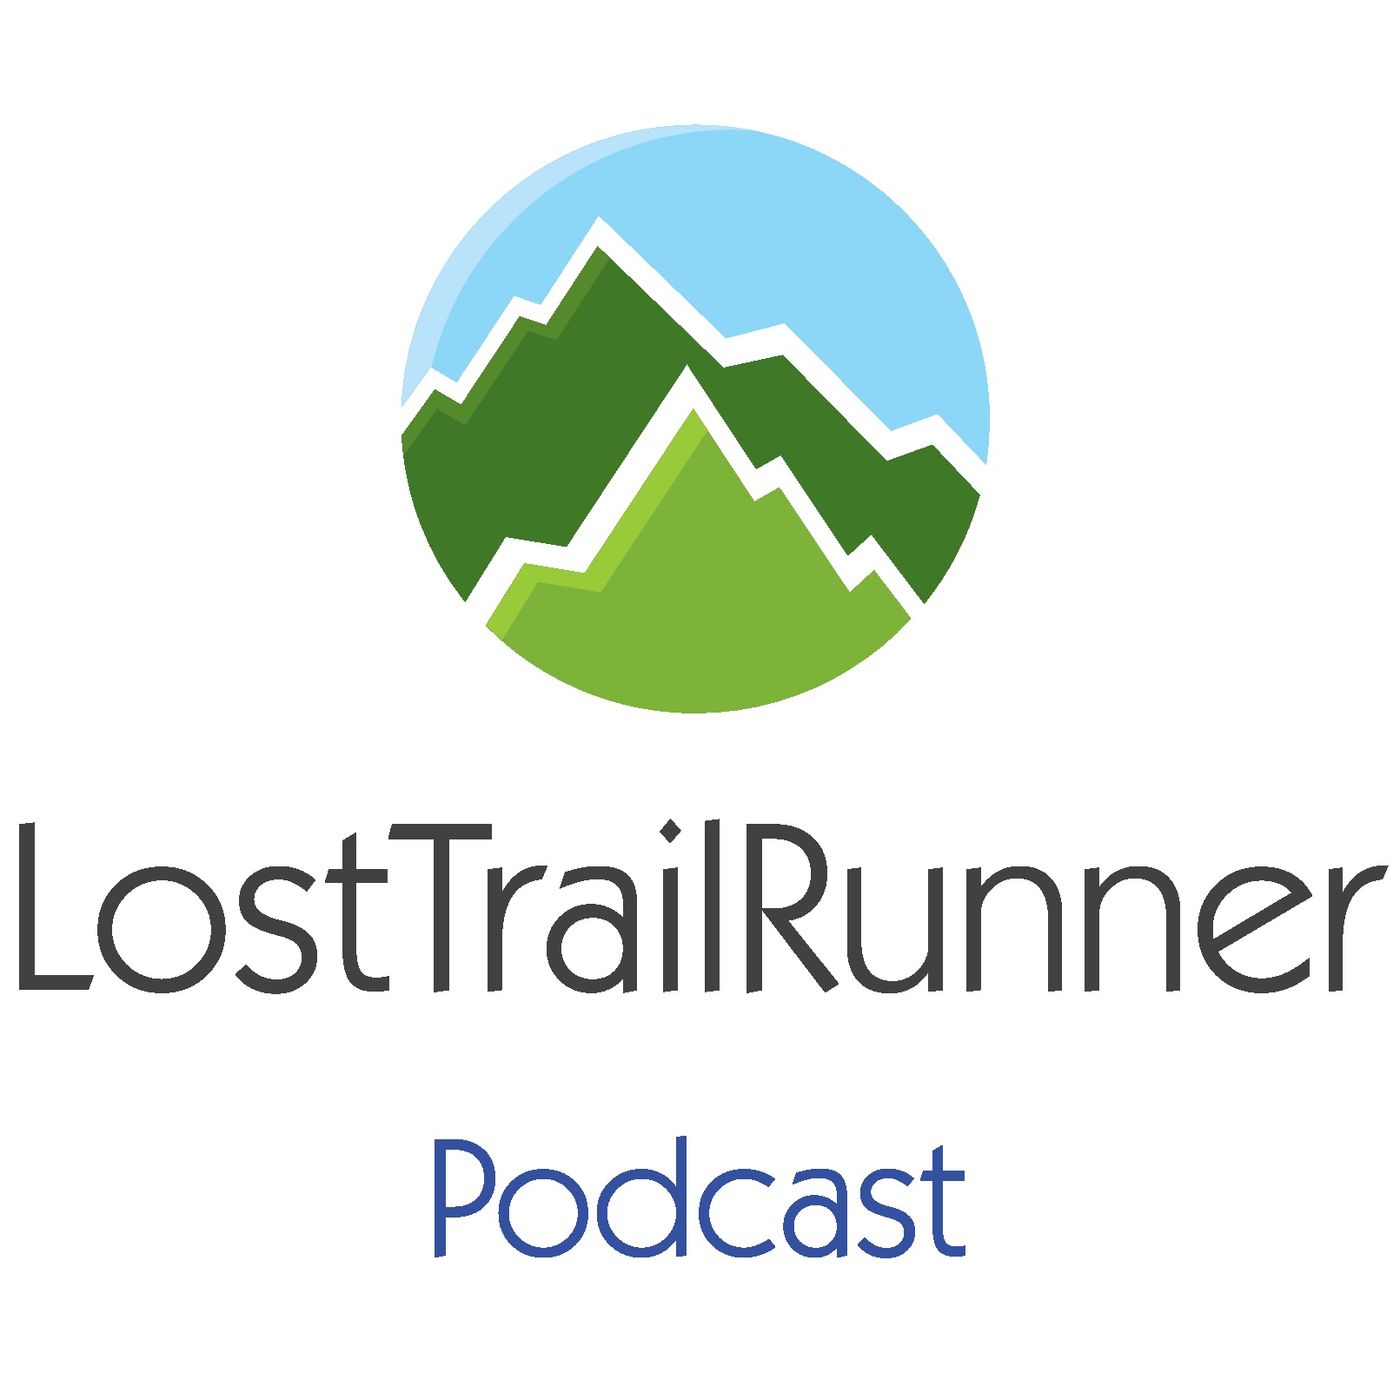 LostTrailRunner Podcast